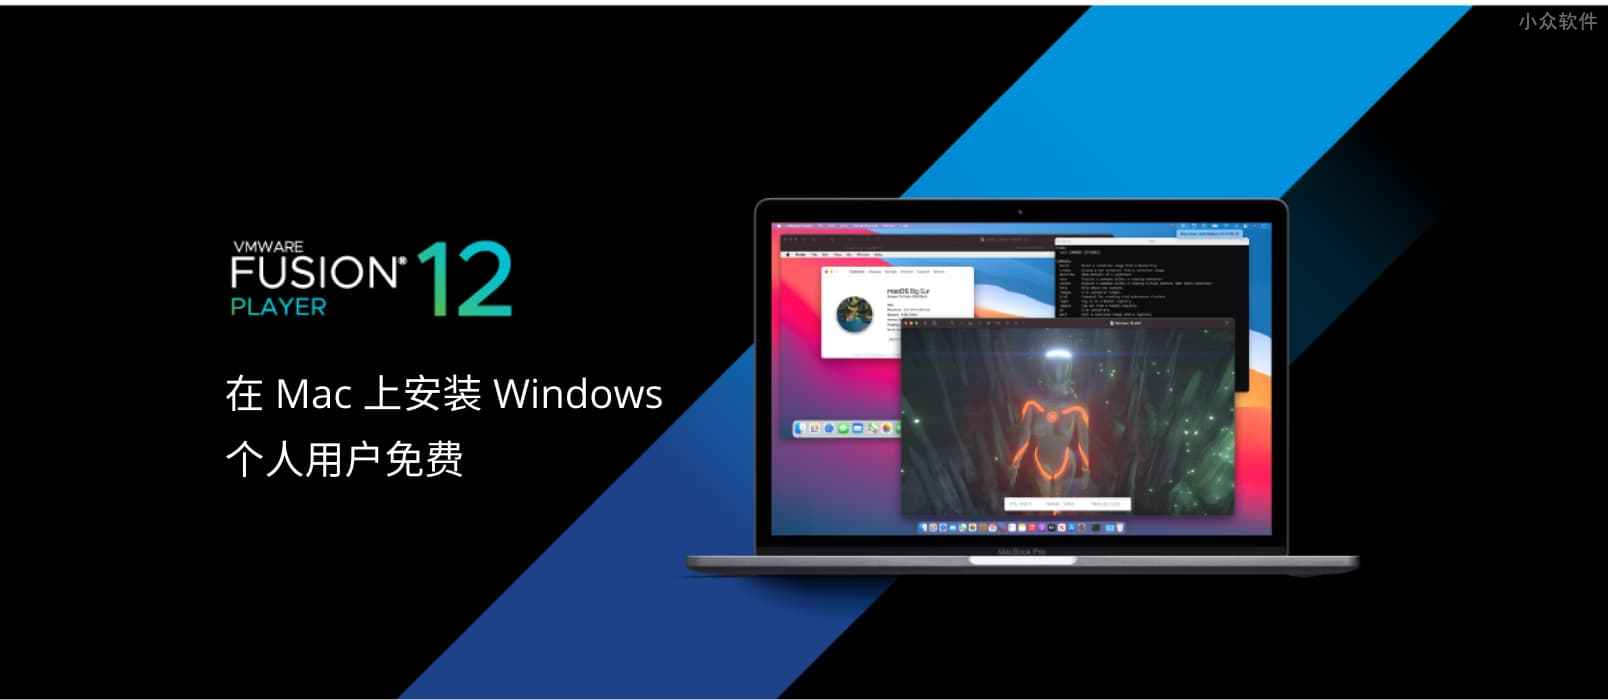 在 Mac 安装 Windows 的虚拟机工具 VMware Fusion 12 正式发布，个人免费